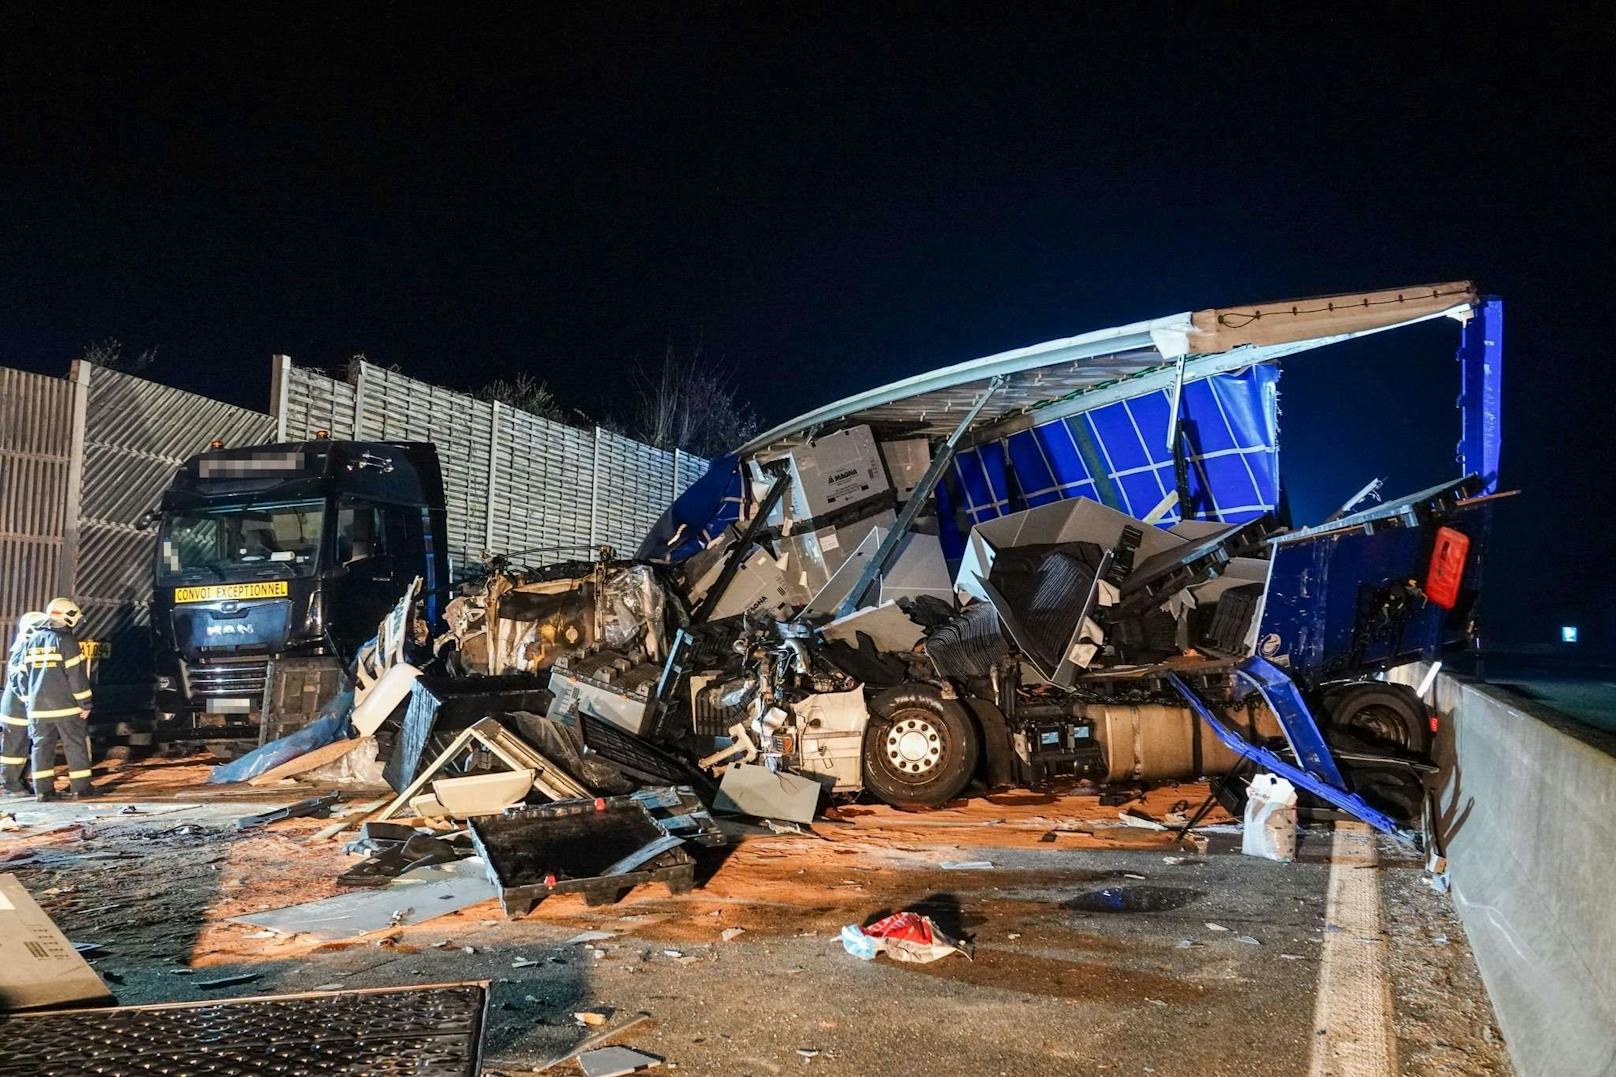 Ein tragischer Verkehrsunfall ereignete sich am Freitag gegen 01:00 Uhr auf der Westautobahn in Fahrtrichtung Salzburg zwischen Melk und Pöchlarn. Ein Sattelzug kollidierte mit zwei am Pannenstreifen abgestellten Sondertransportern, bevor er gegen die Mittelbetonleitschiene prallte. Ein Mann kam dabei ums Leben.